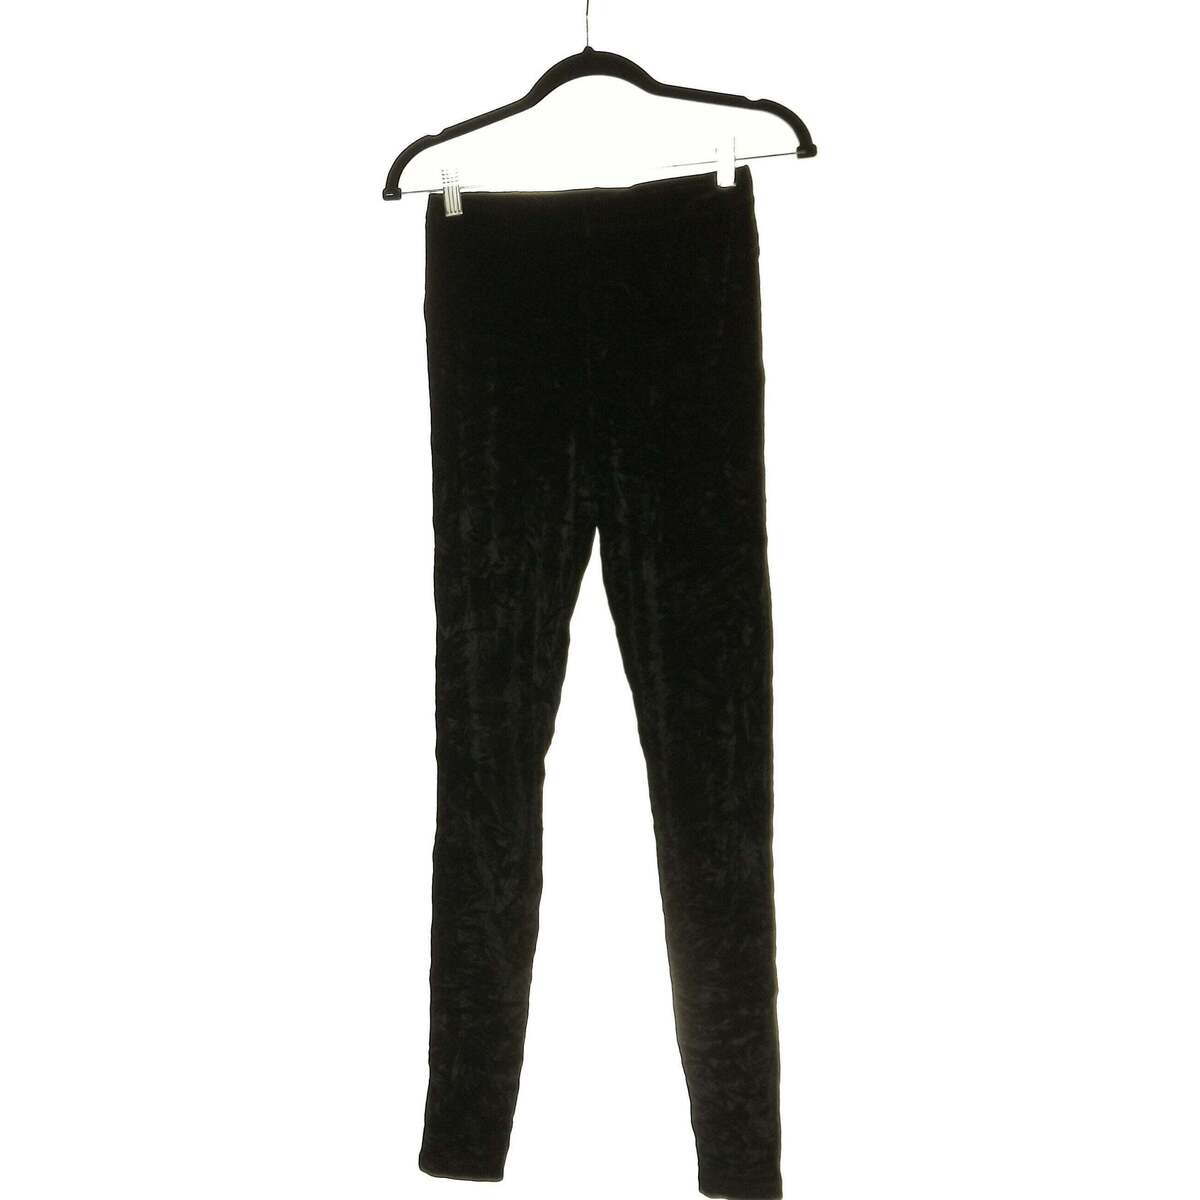 Vêtements Femme Pantalons Asos pantalon slim femme  36 - T1 - S Noir Noir